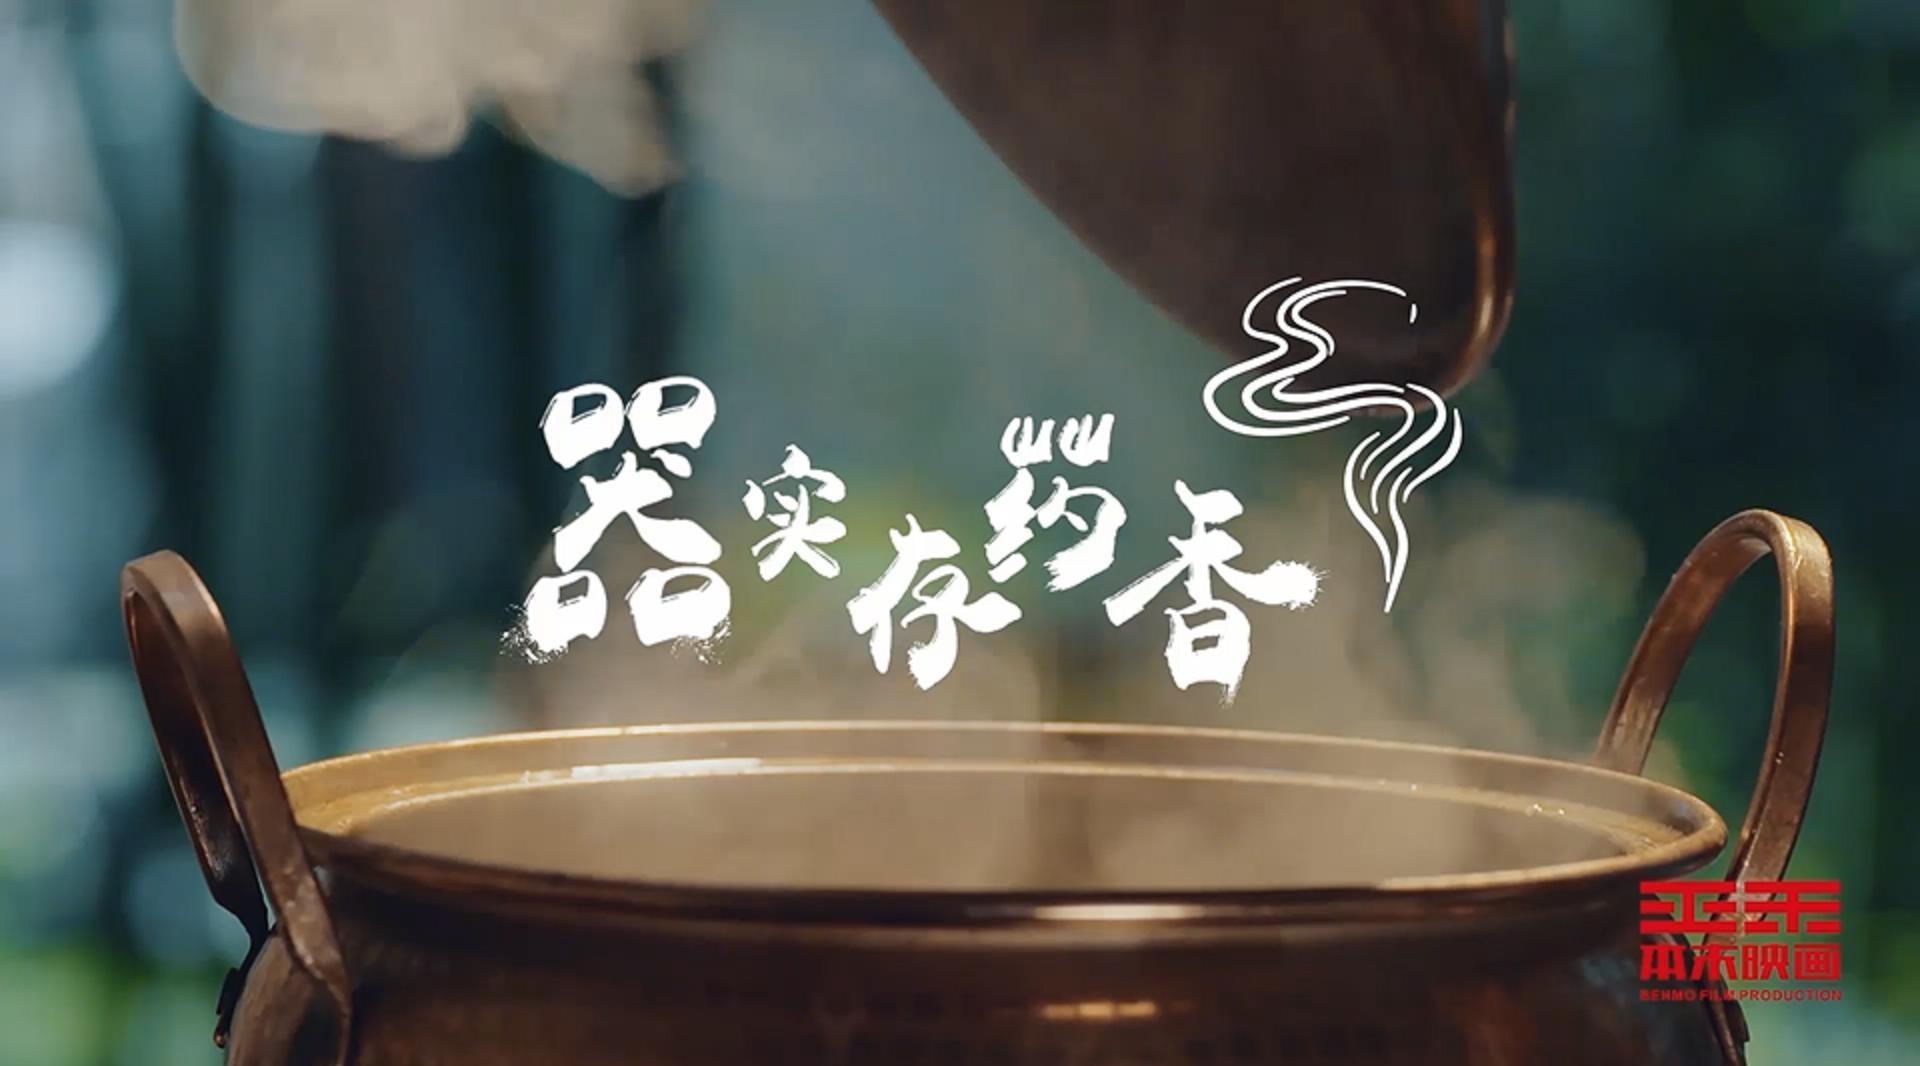 千岛湖旅游系列宣传片——《器实存药香》